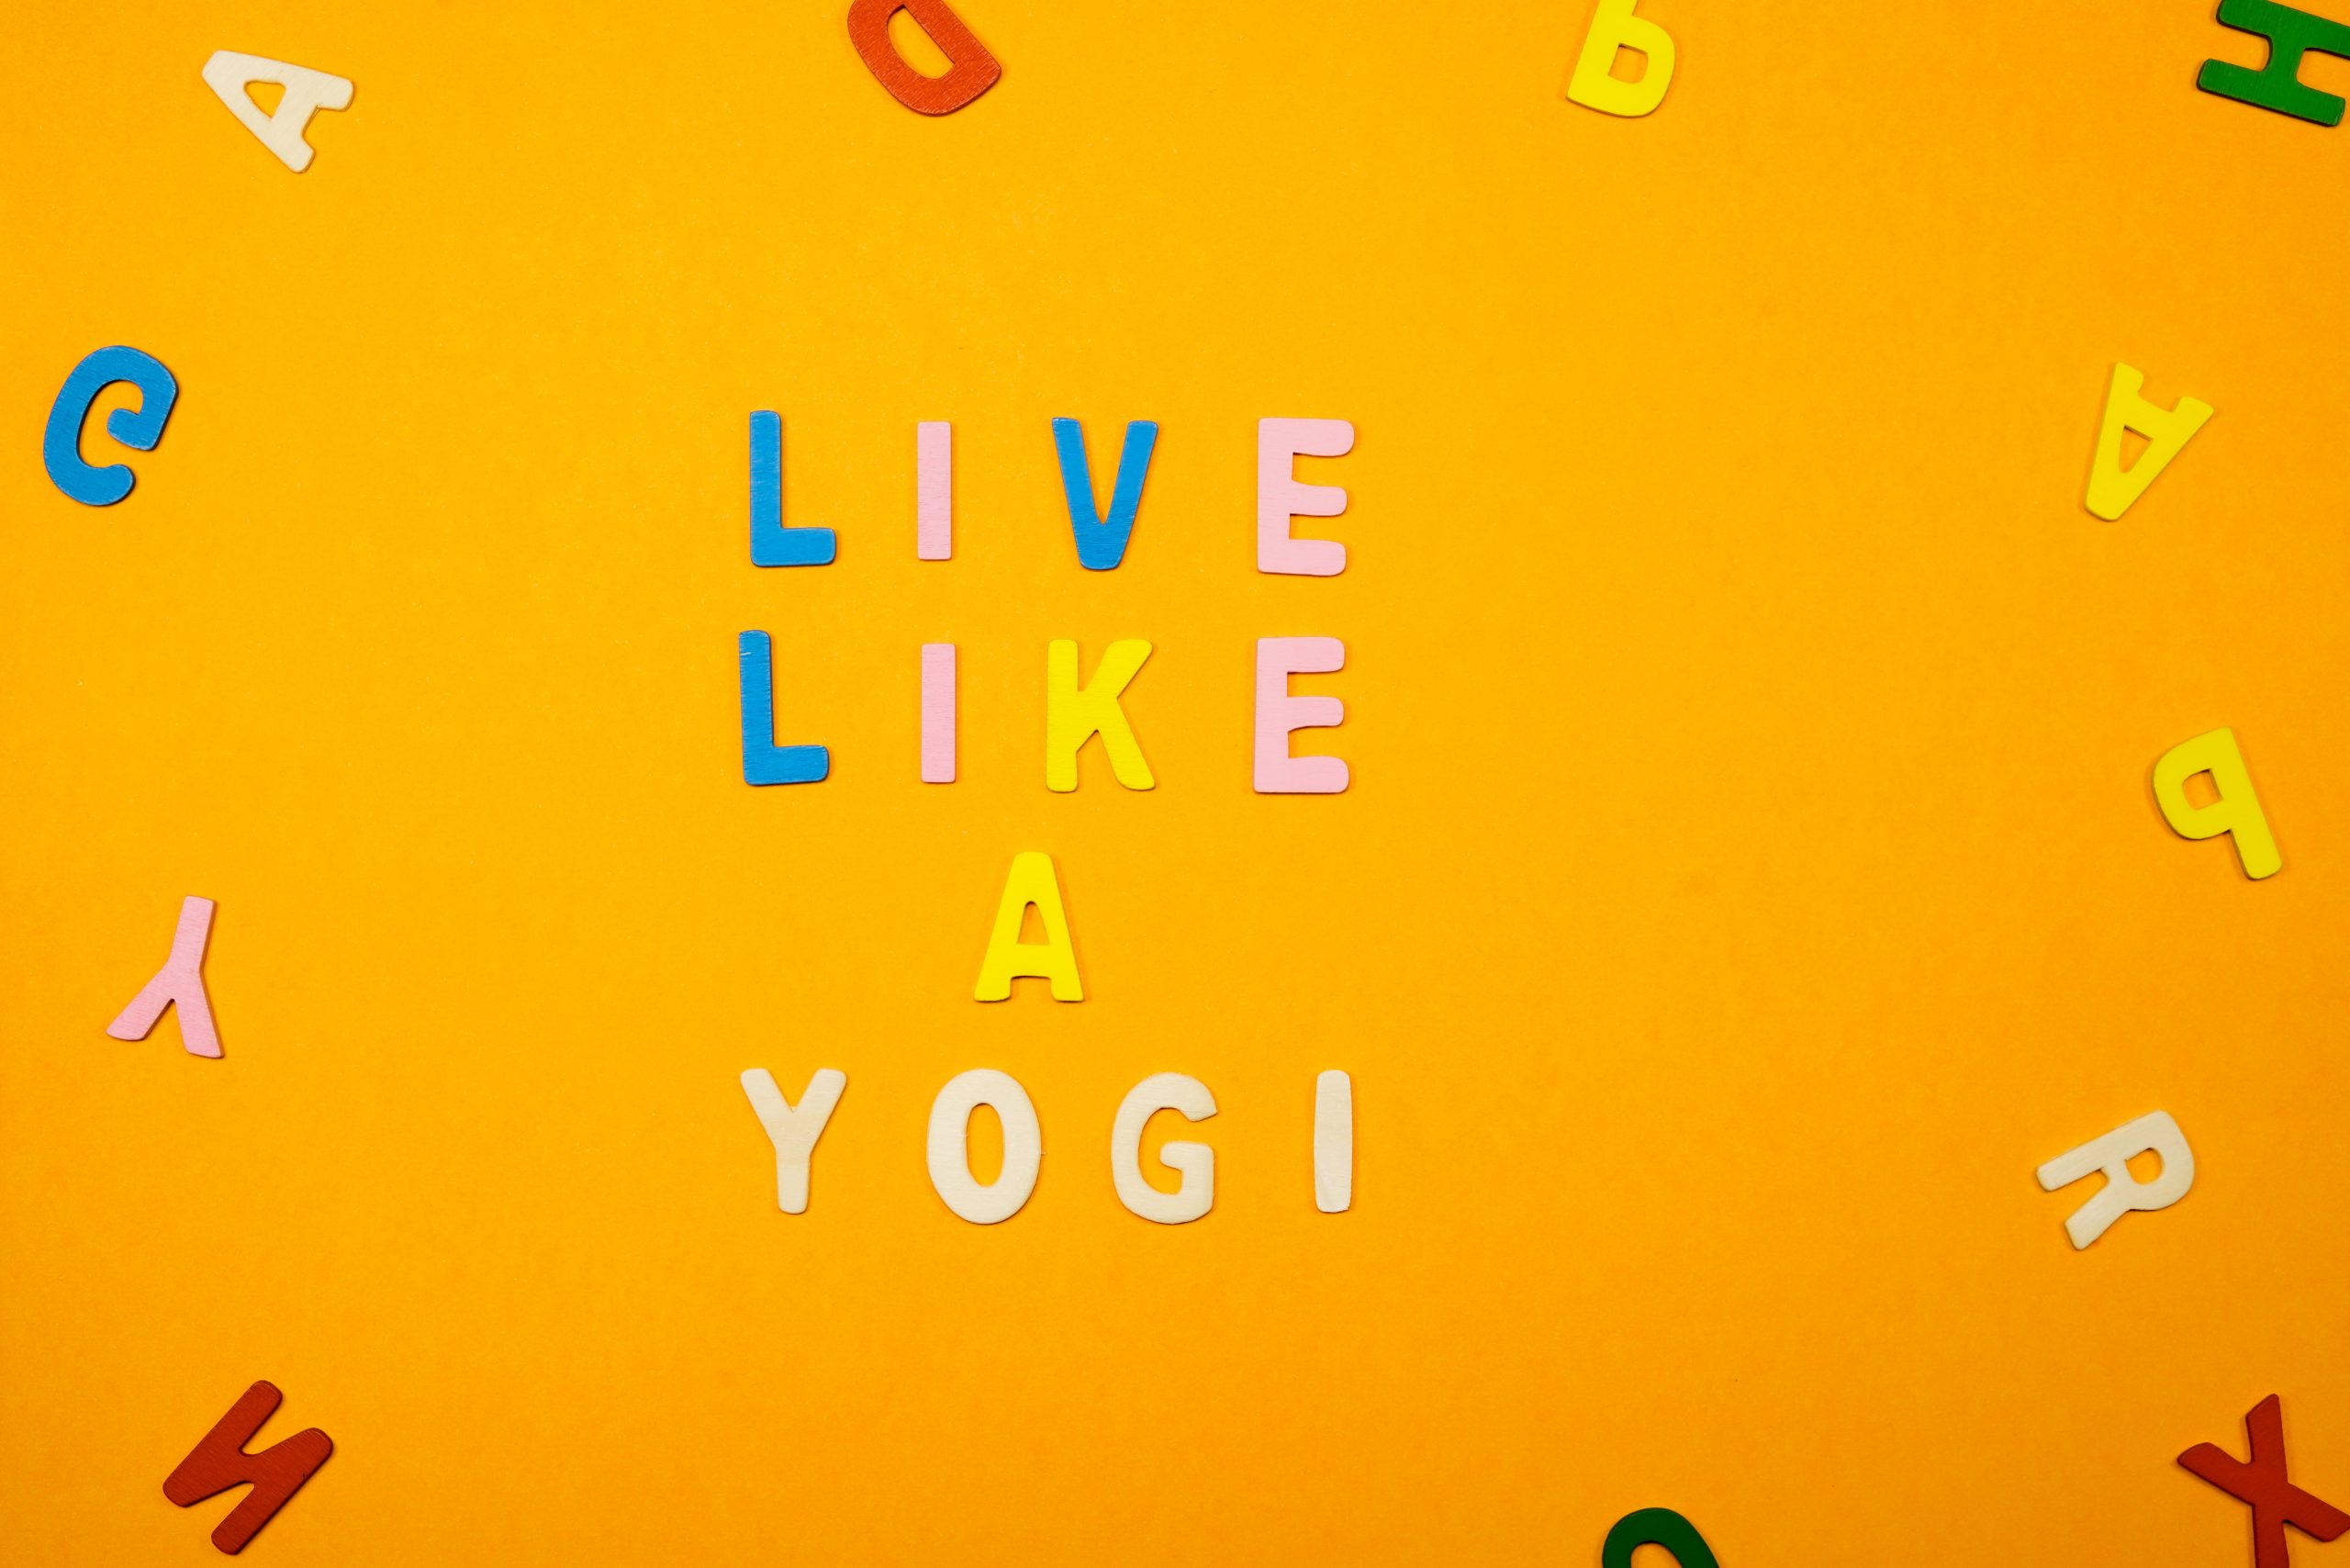 Live like a yogi